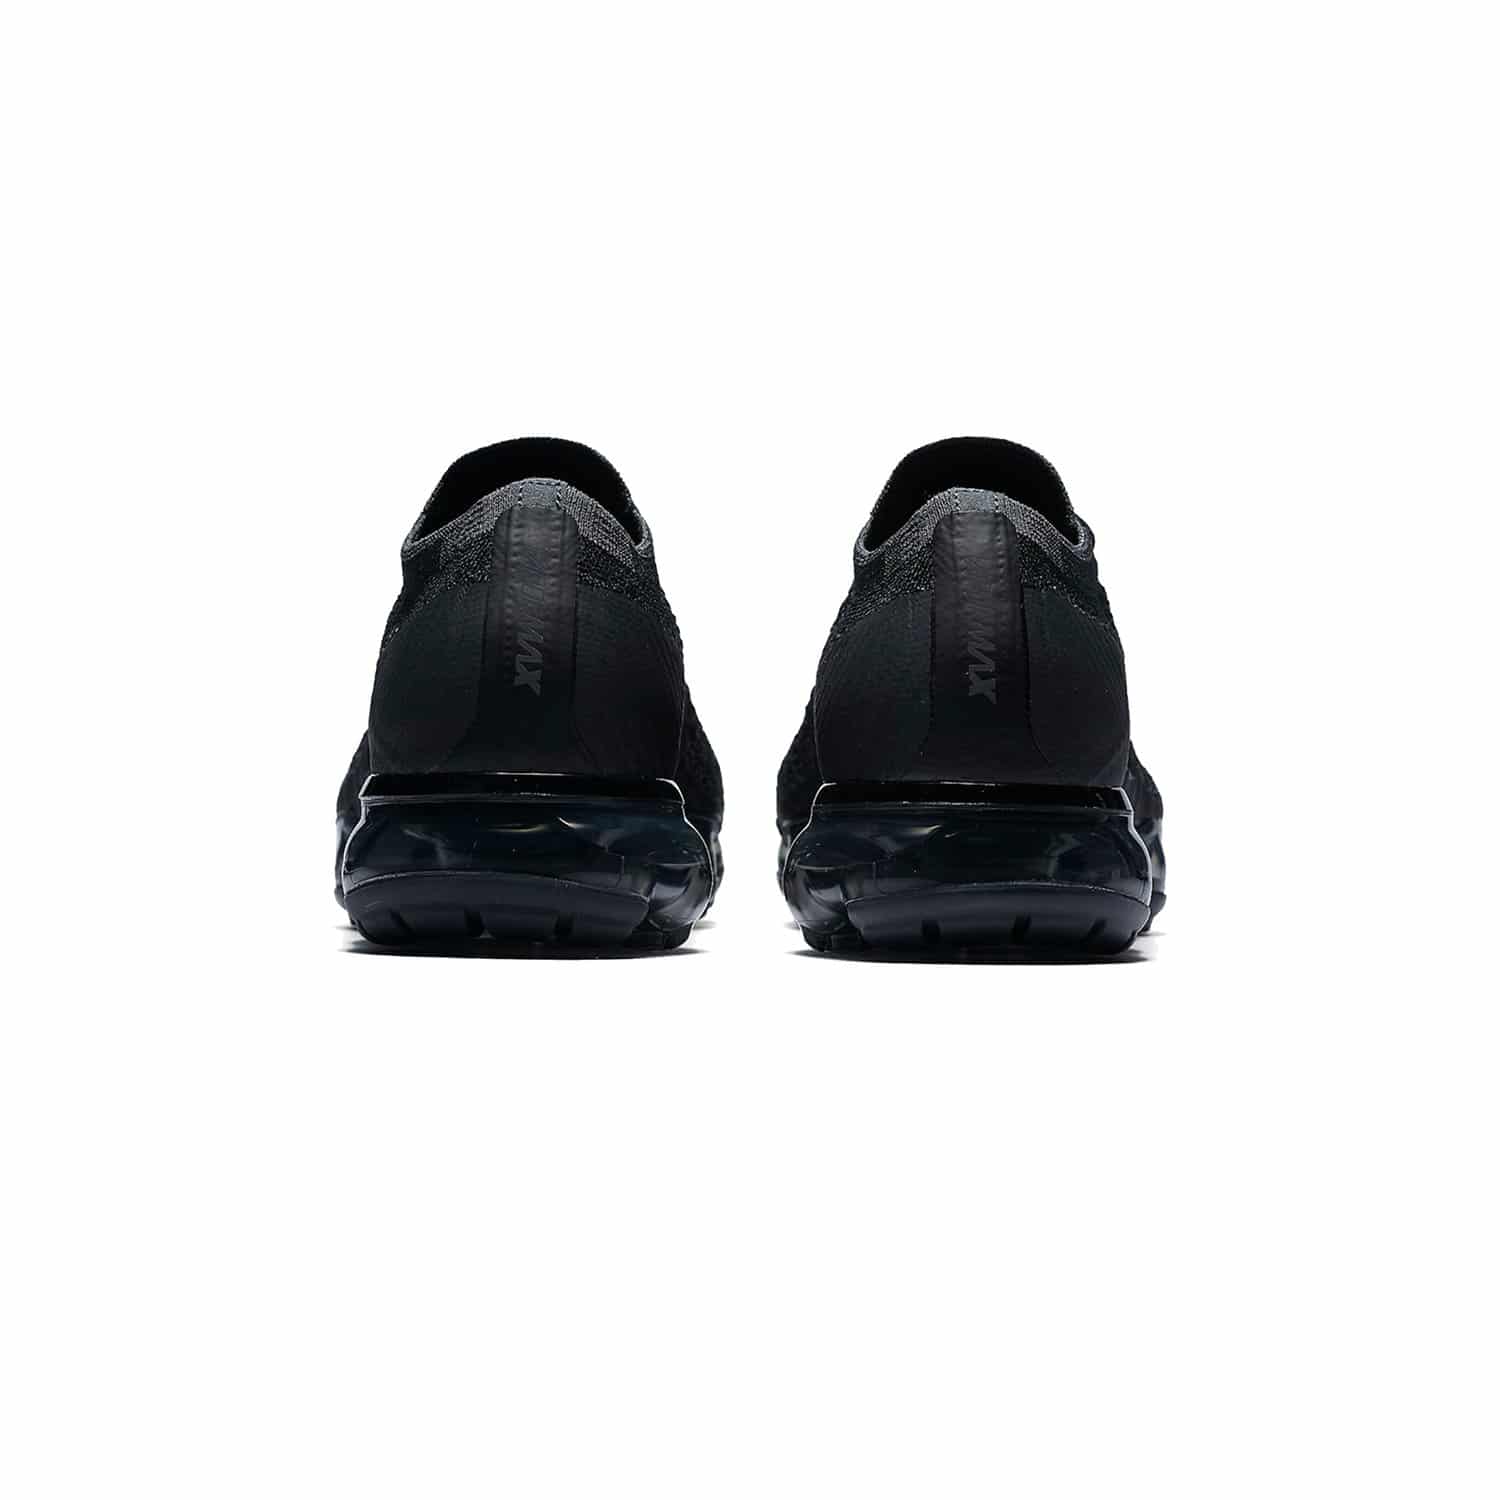 Air Max Vapormax 1.0 TRIPLE BLACK – IbuySneakers